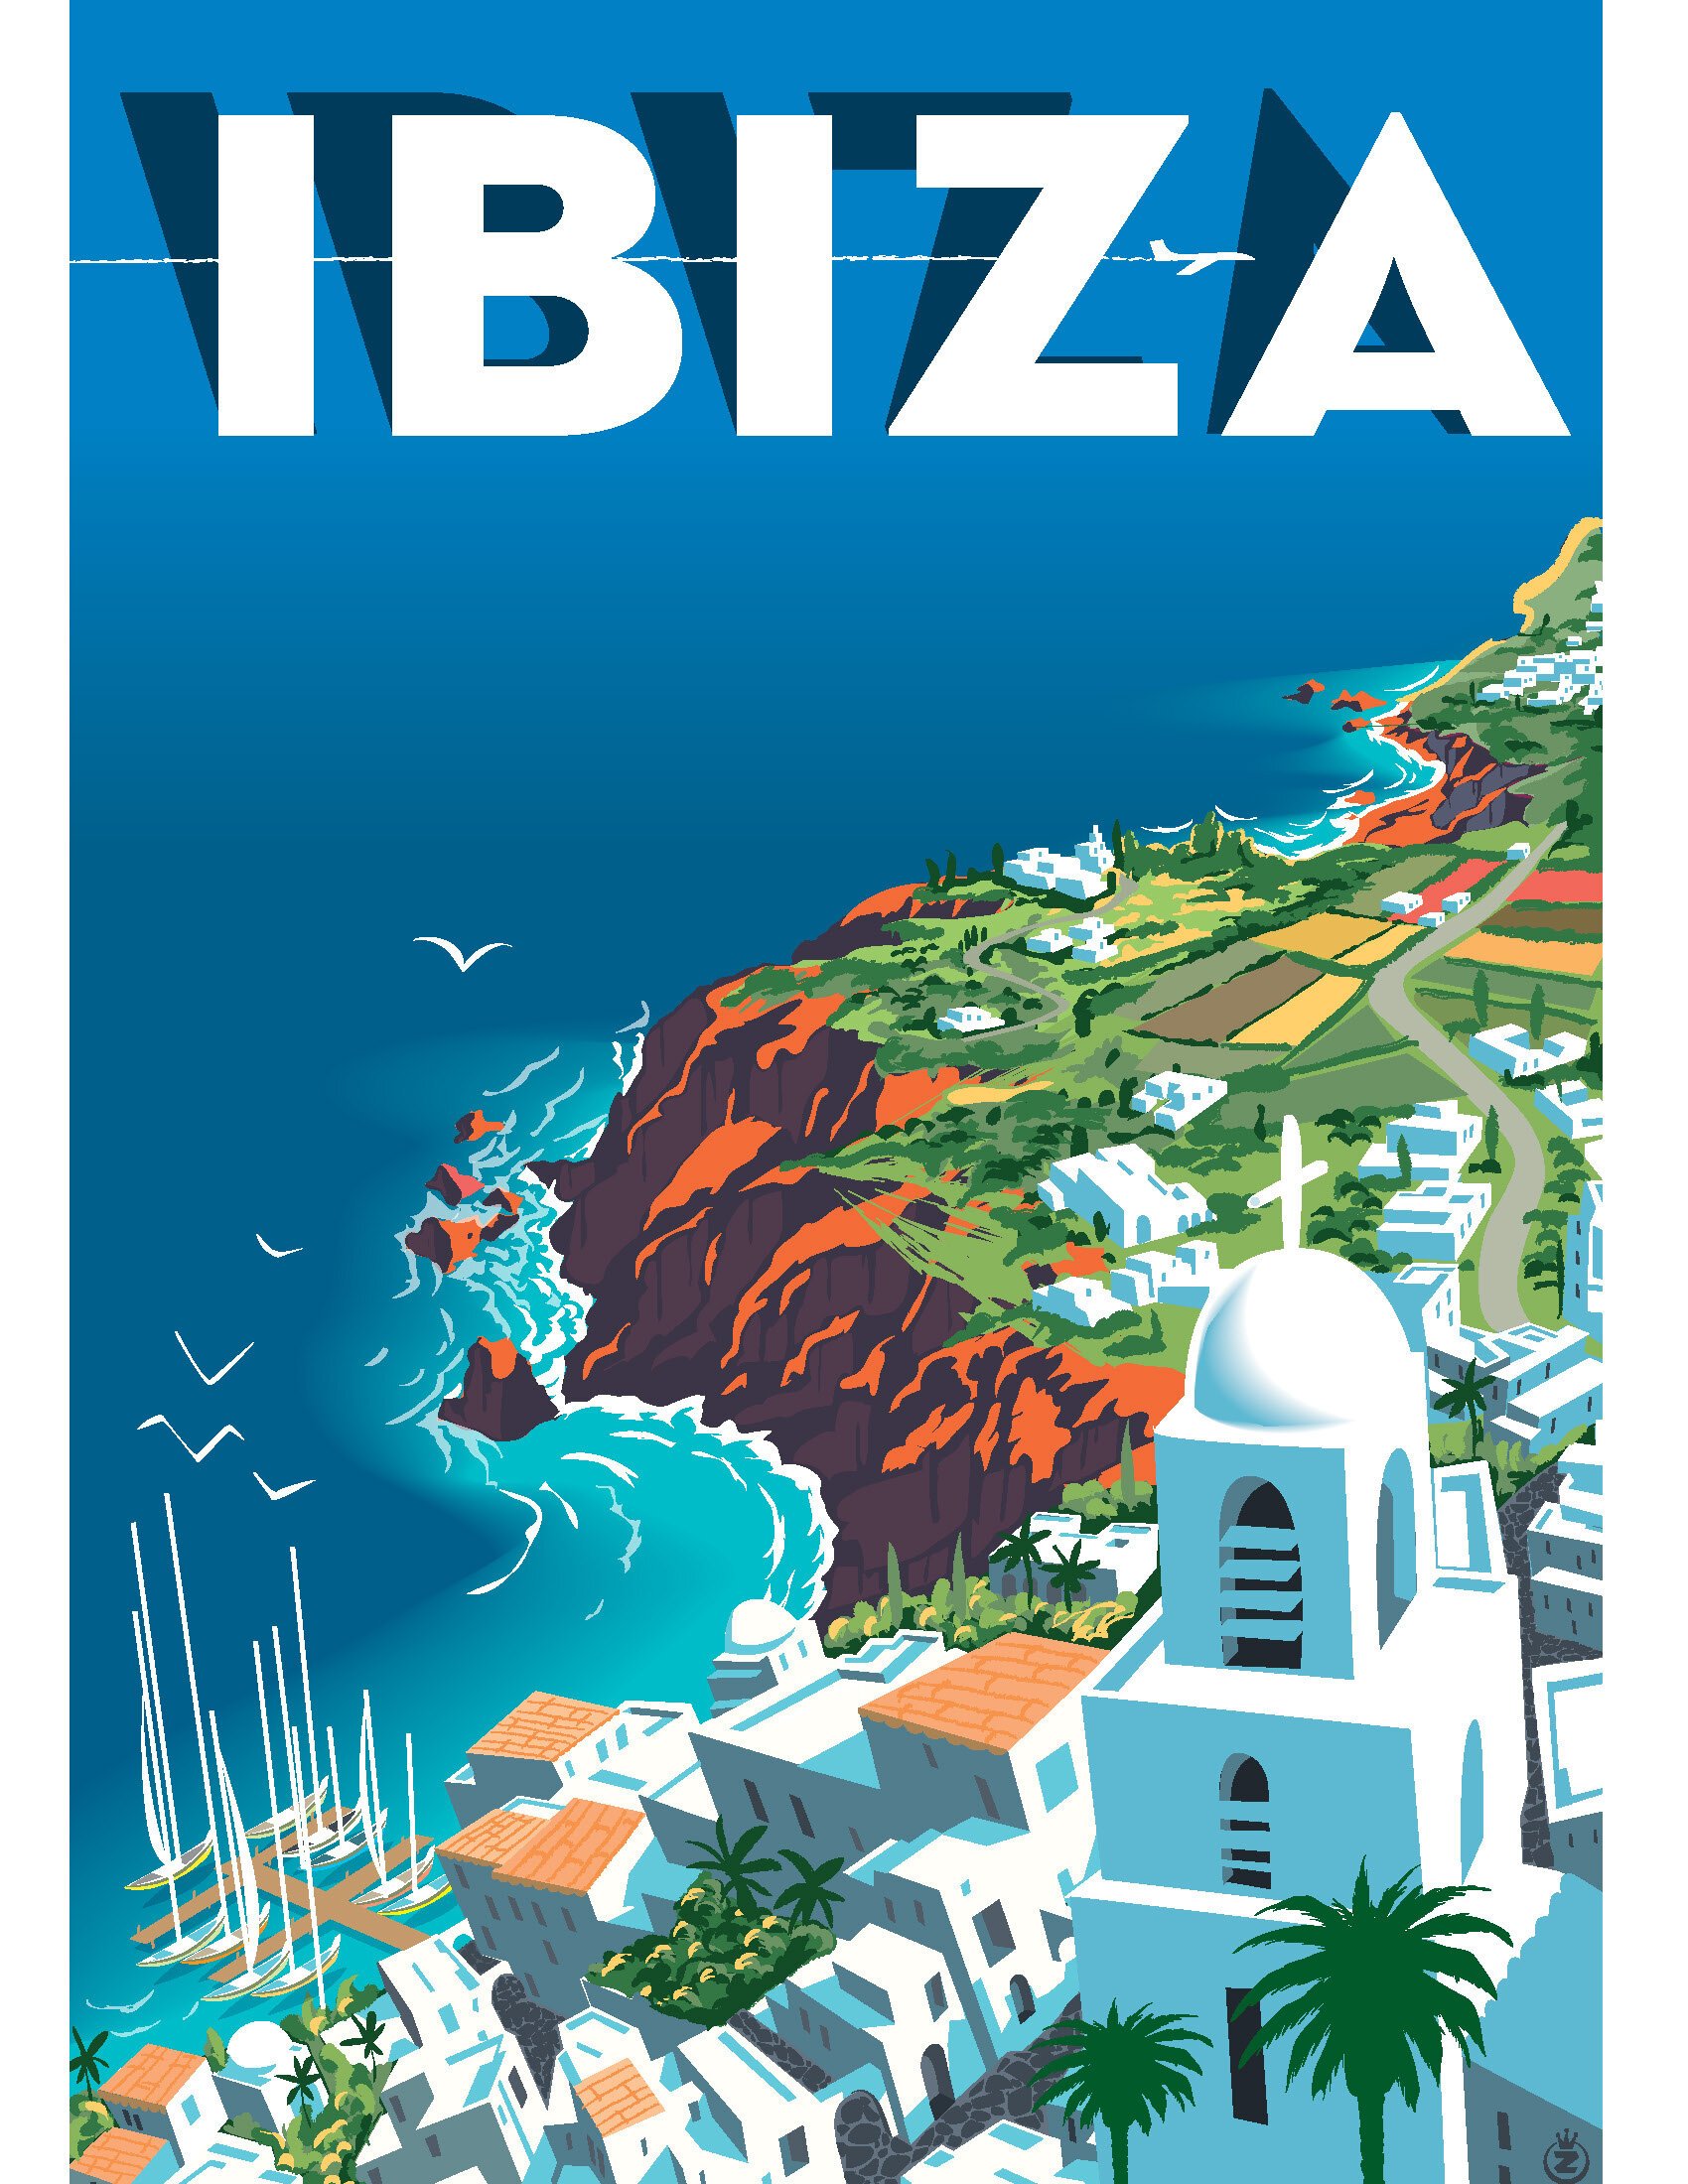 Visit Ibiza